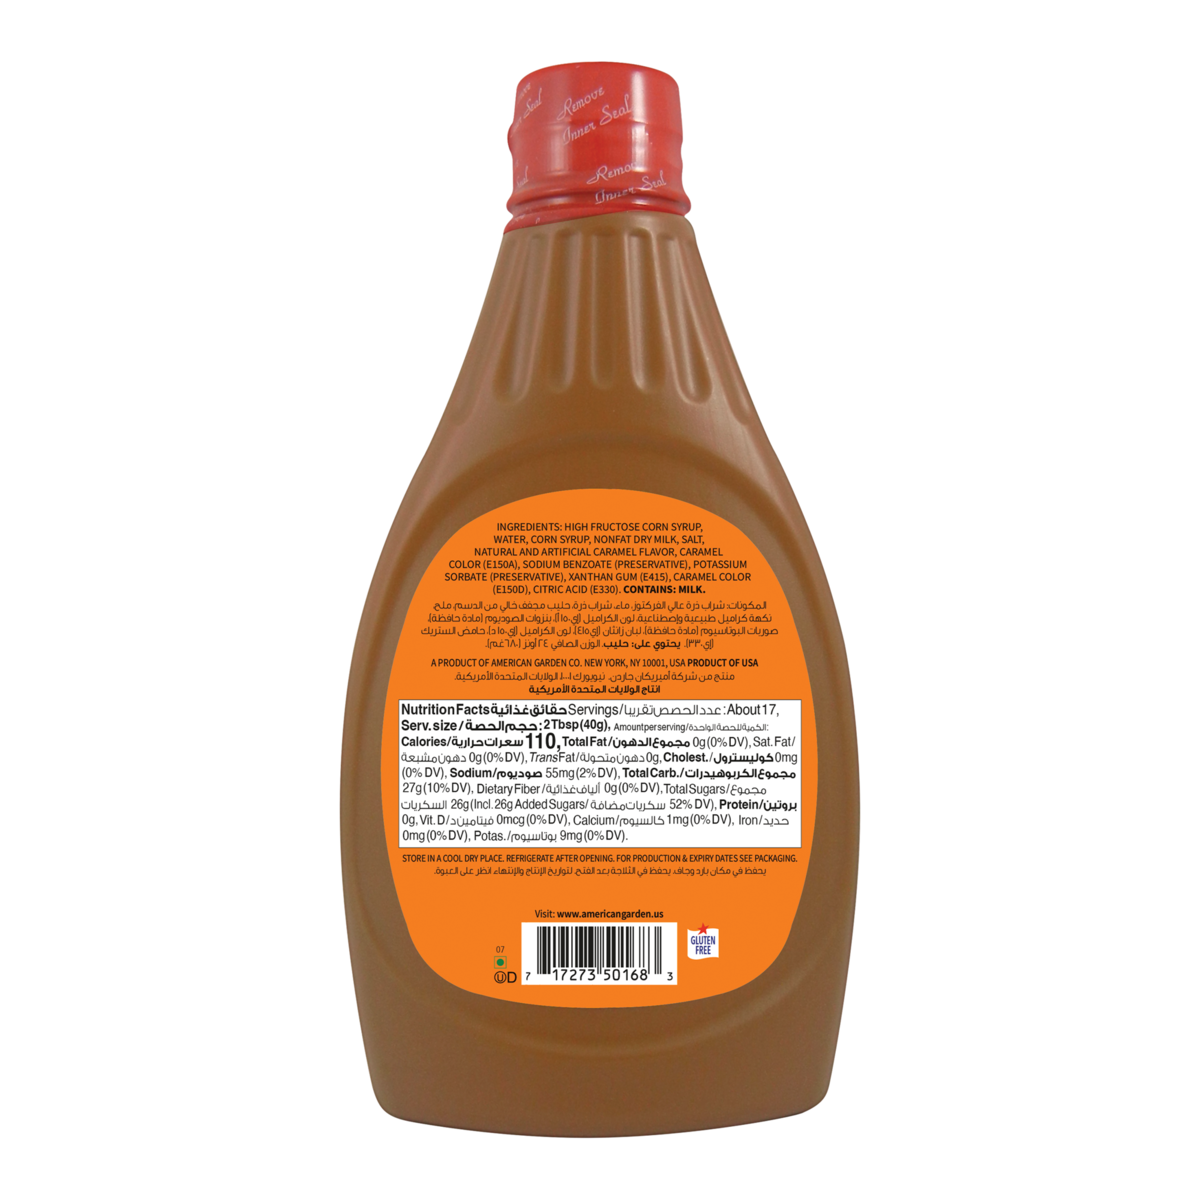 American Garden Caramel Syrup 680 g